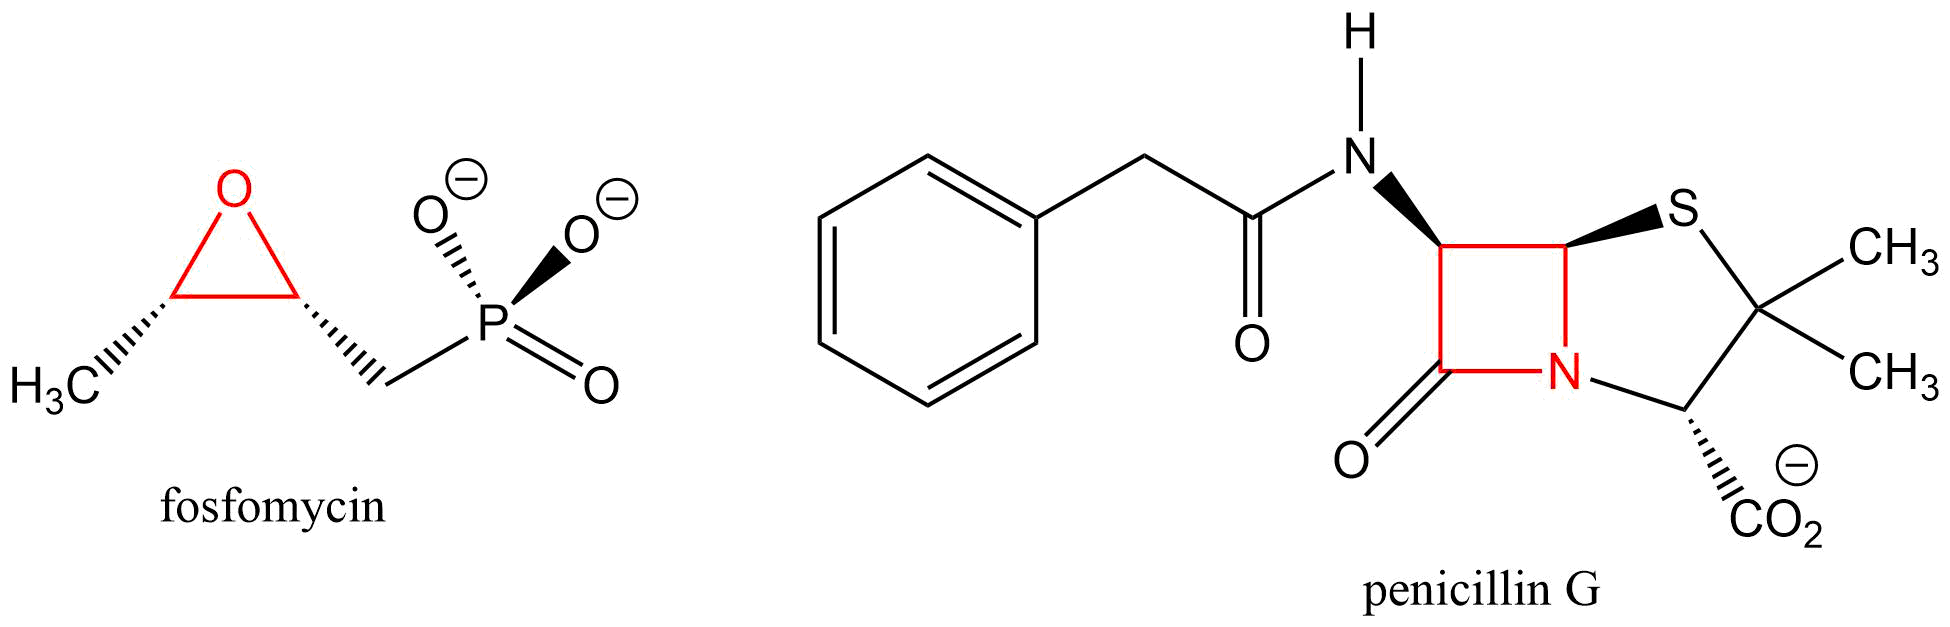 Izquierda: fosfomicina; incluye ciclopropano. Derecha: penicilina G; incluye ciclobutano.